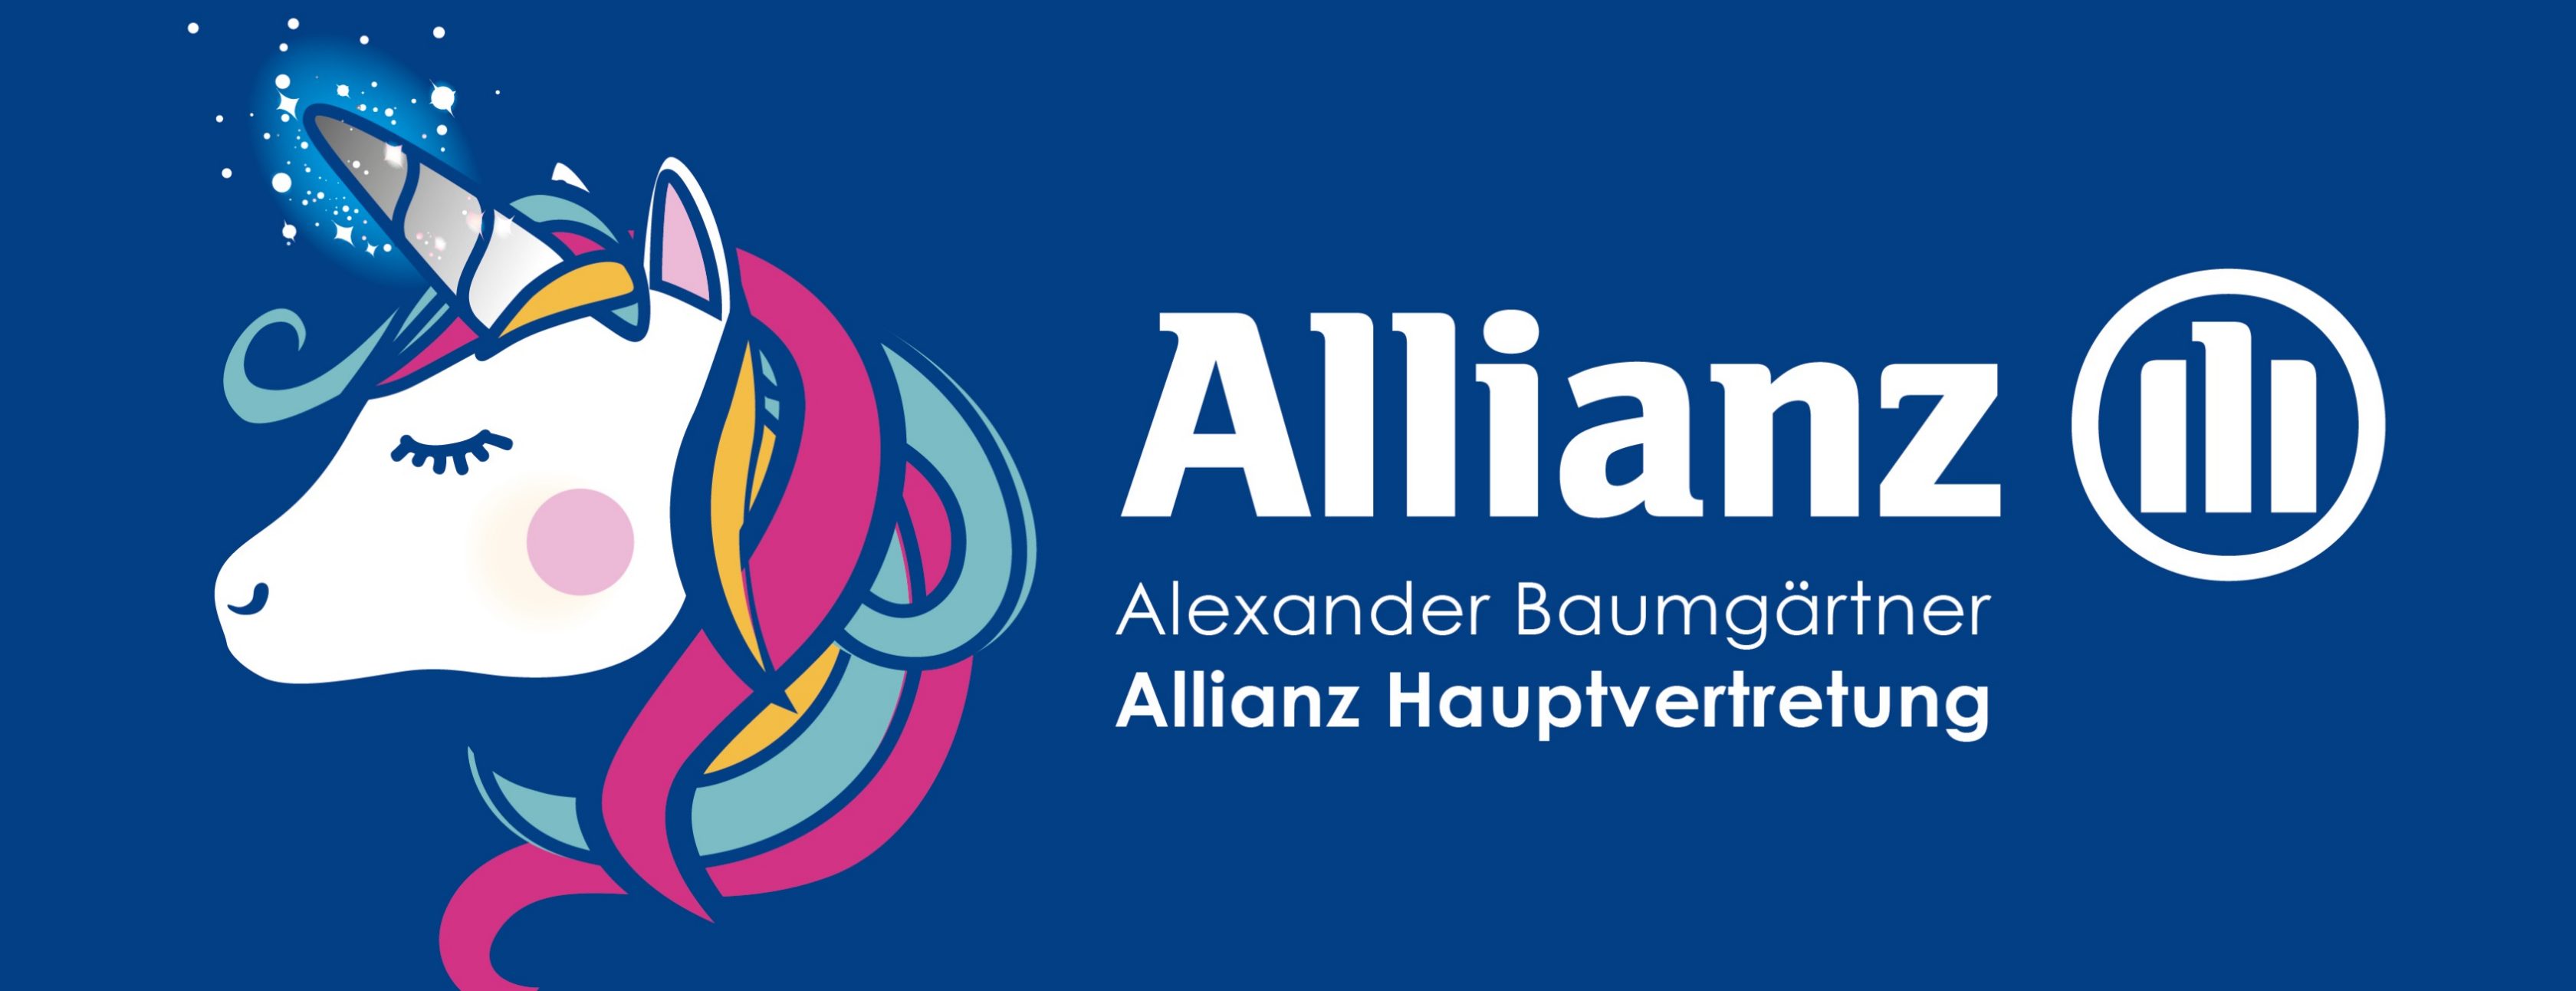 Allianz Versicherung Alexander Baumgärtner Burgau - ... der mit dem Einhorn!